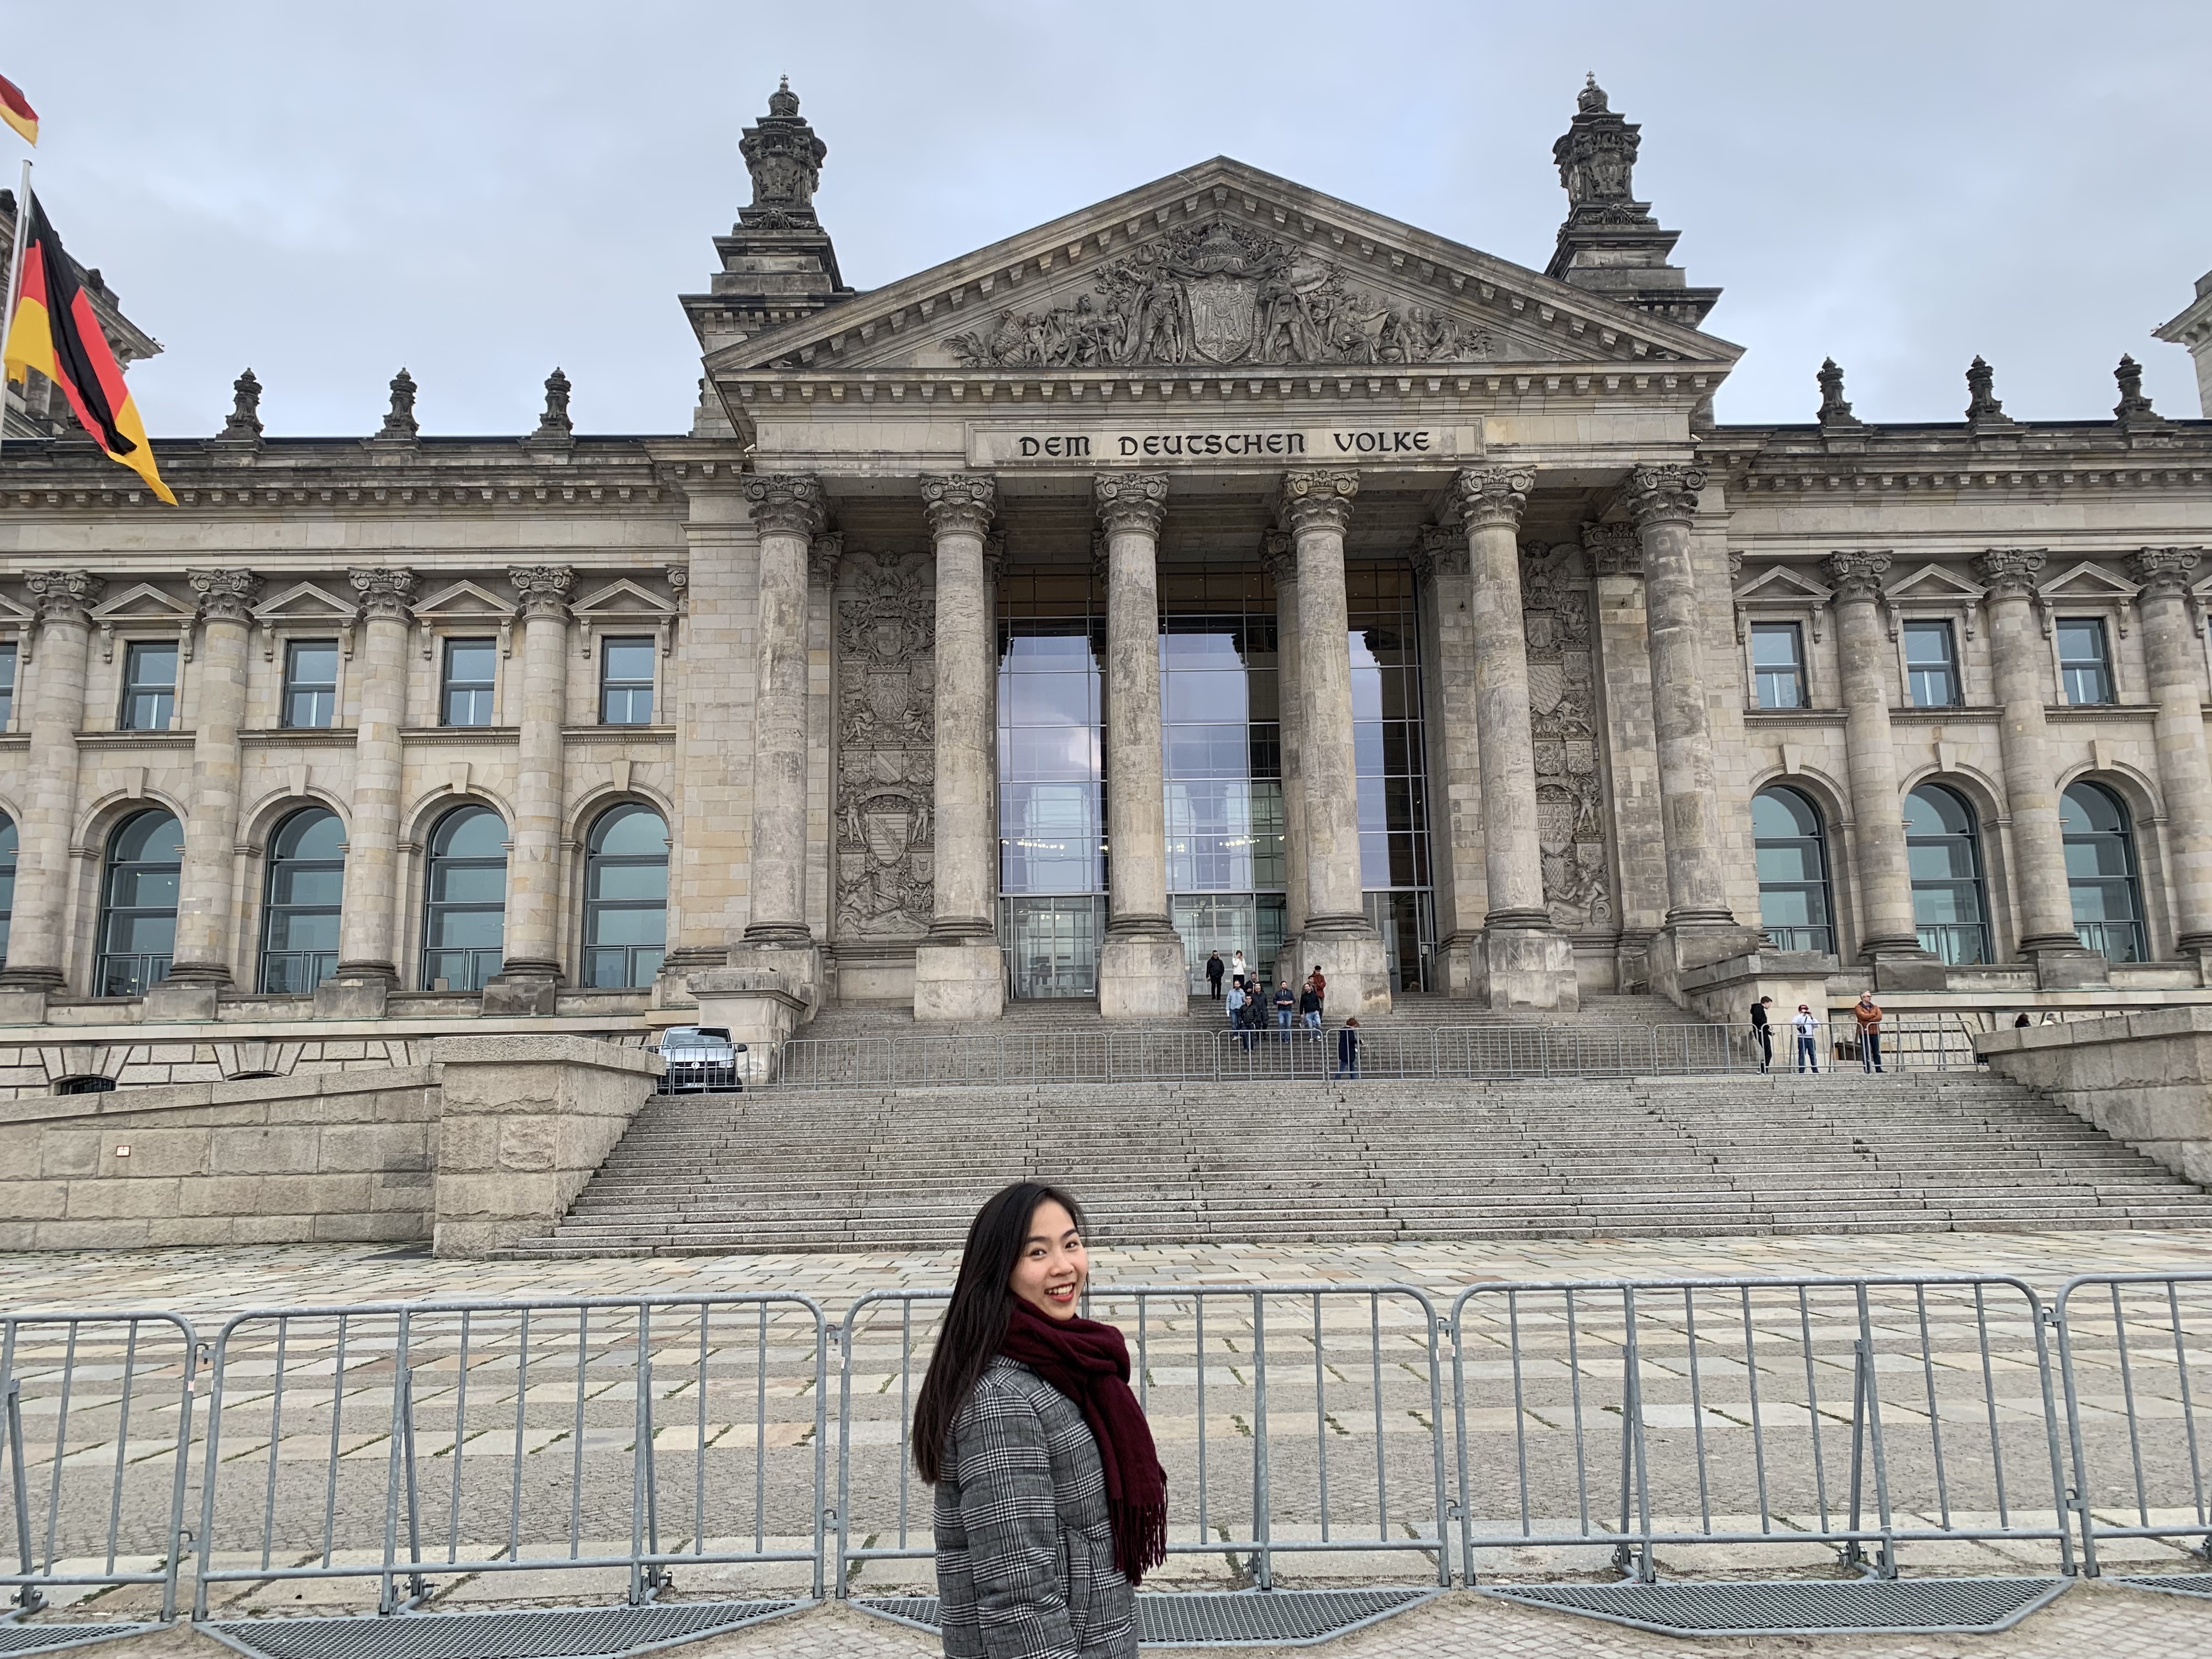 20190323 163712874 iOS - Du học Đức: Chi phí sinh hoạt hàng tháng của mình tại Đức